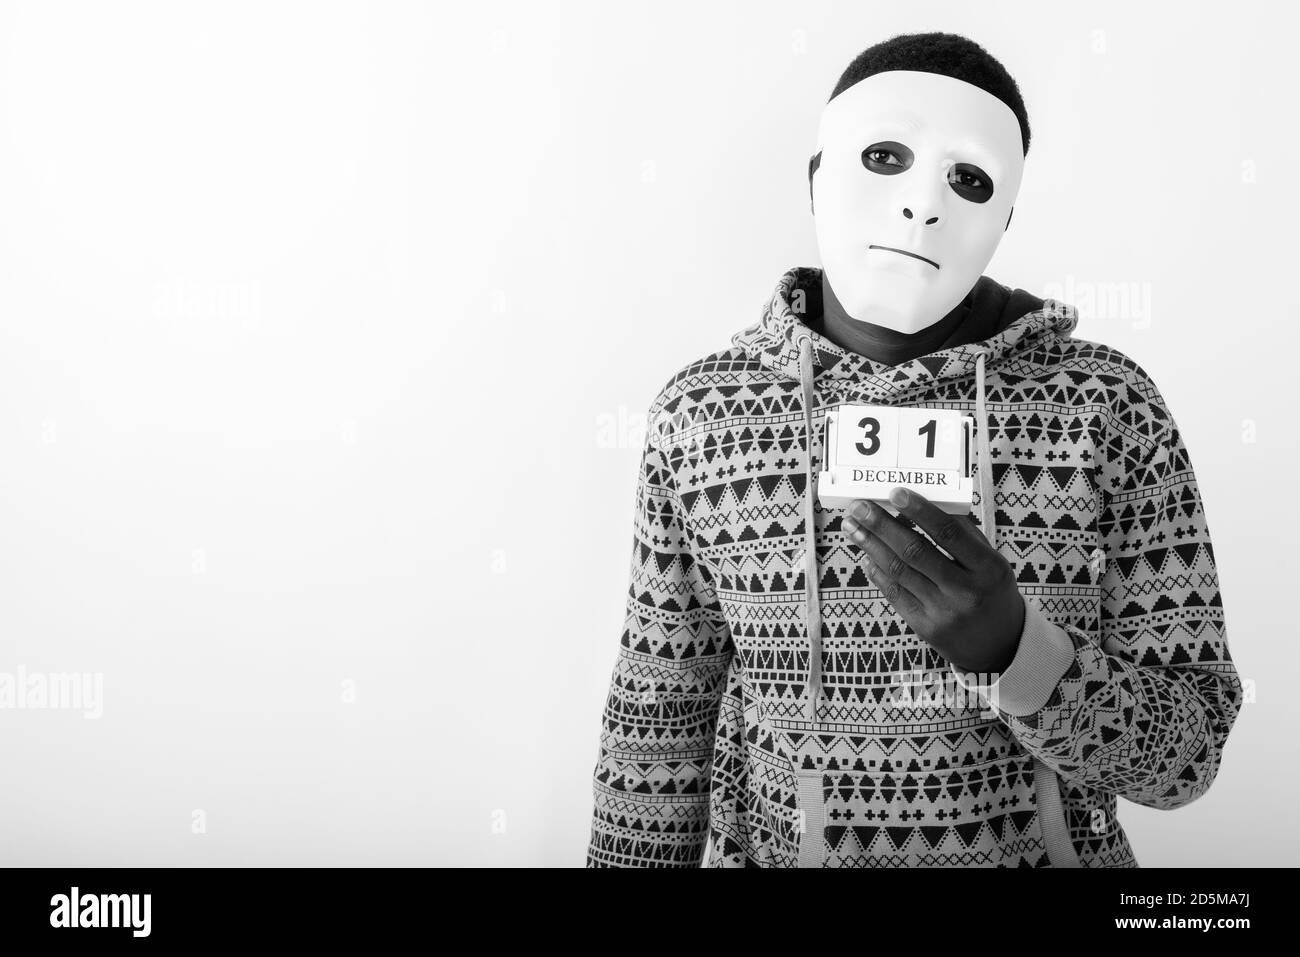 Studioaufnahme eines jungen schwarzen afrikanischen Mannes mit weißer Maske Halten Sie den Kalender für den 31. Dezember ein Stockfoto